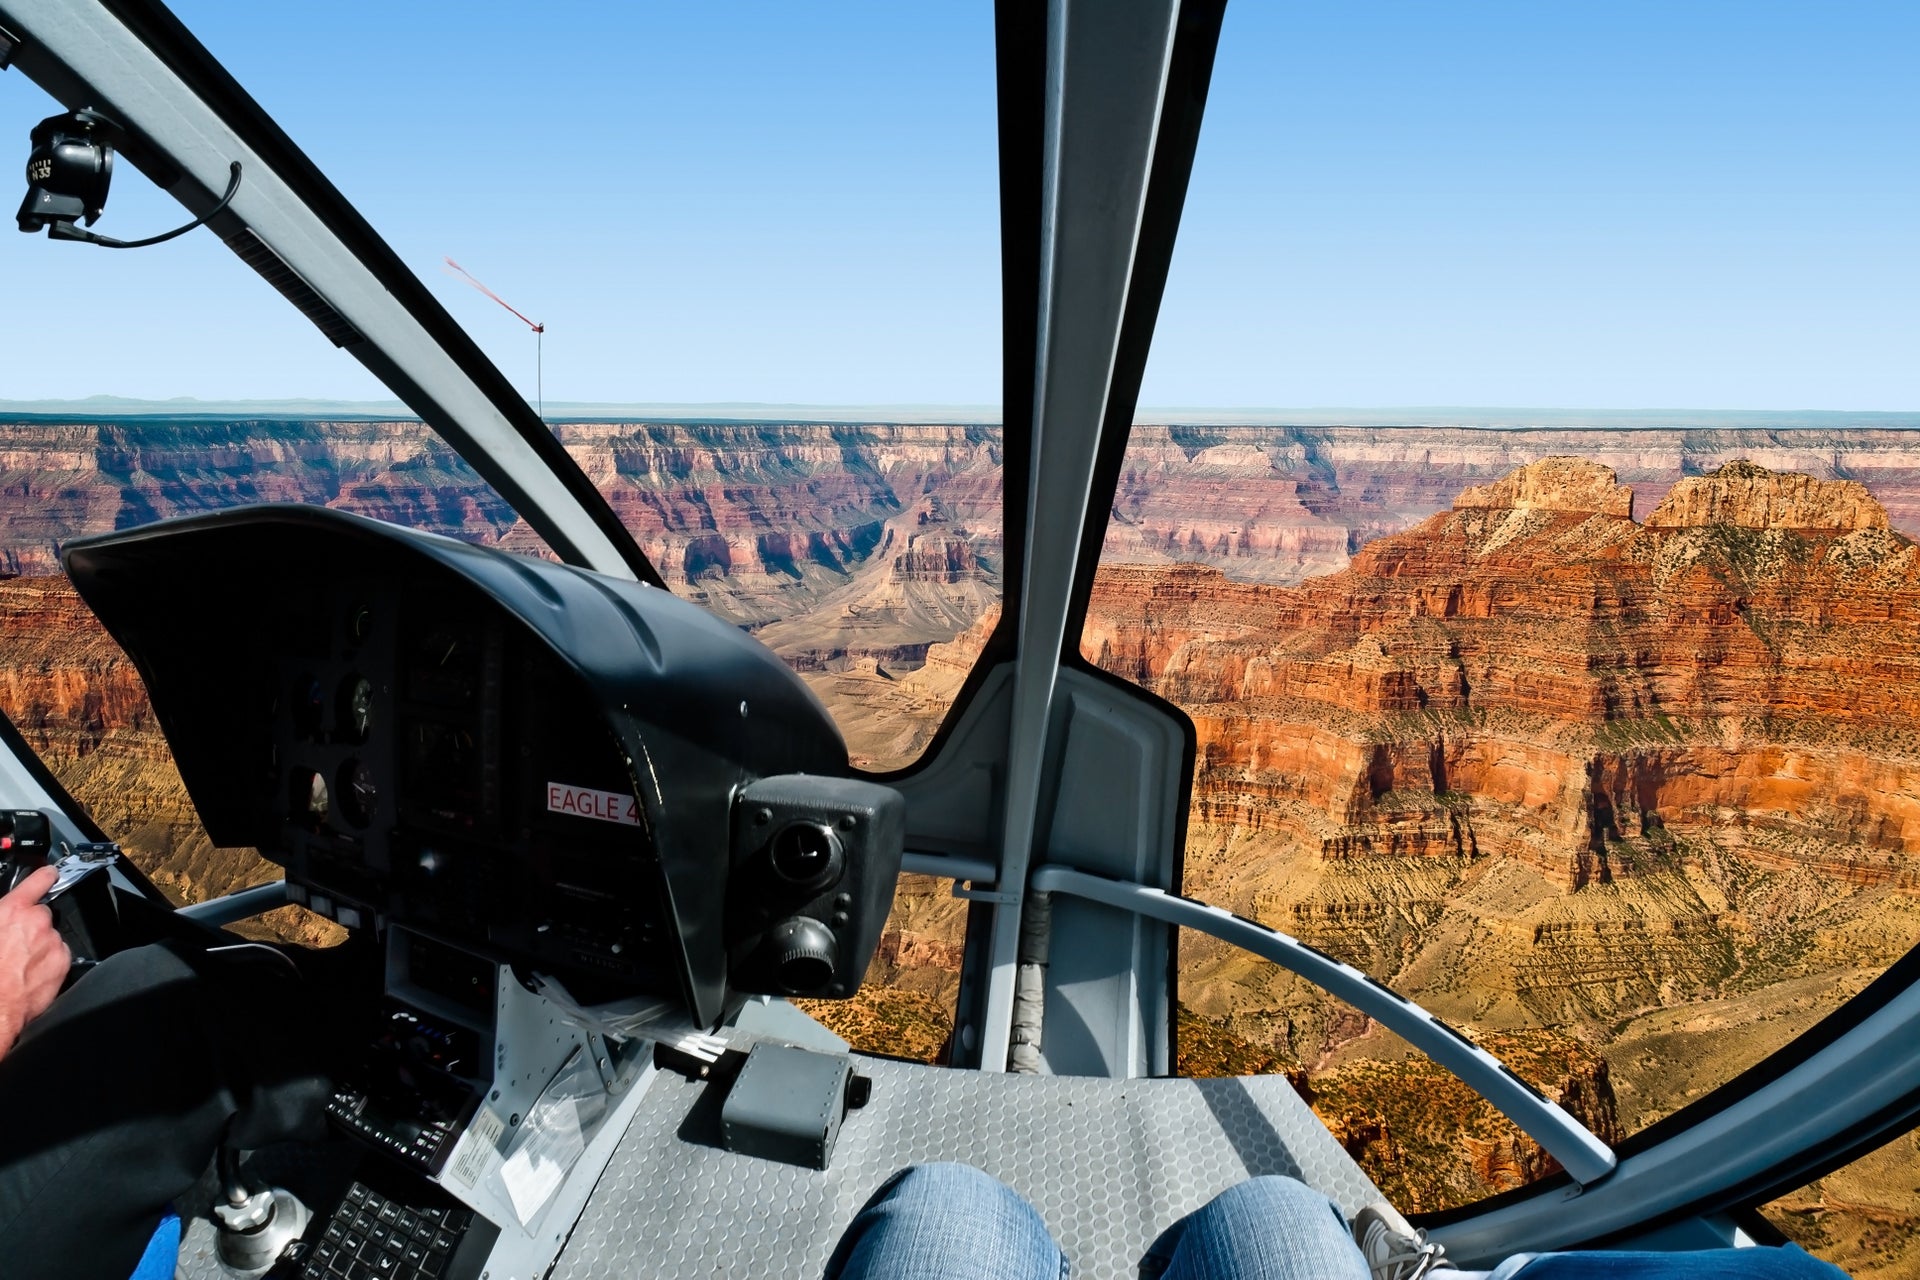 Excursão ao Grand Canyon de helicóptero